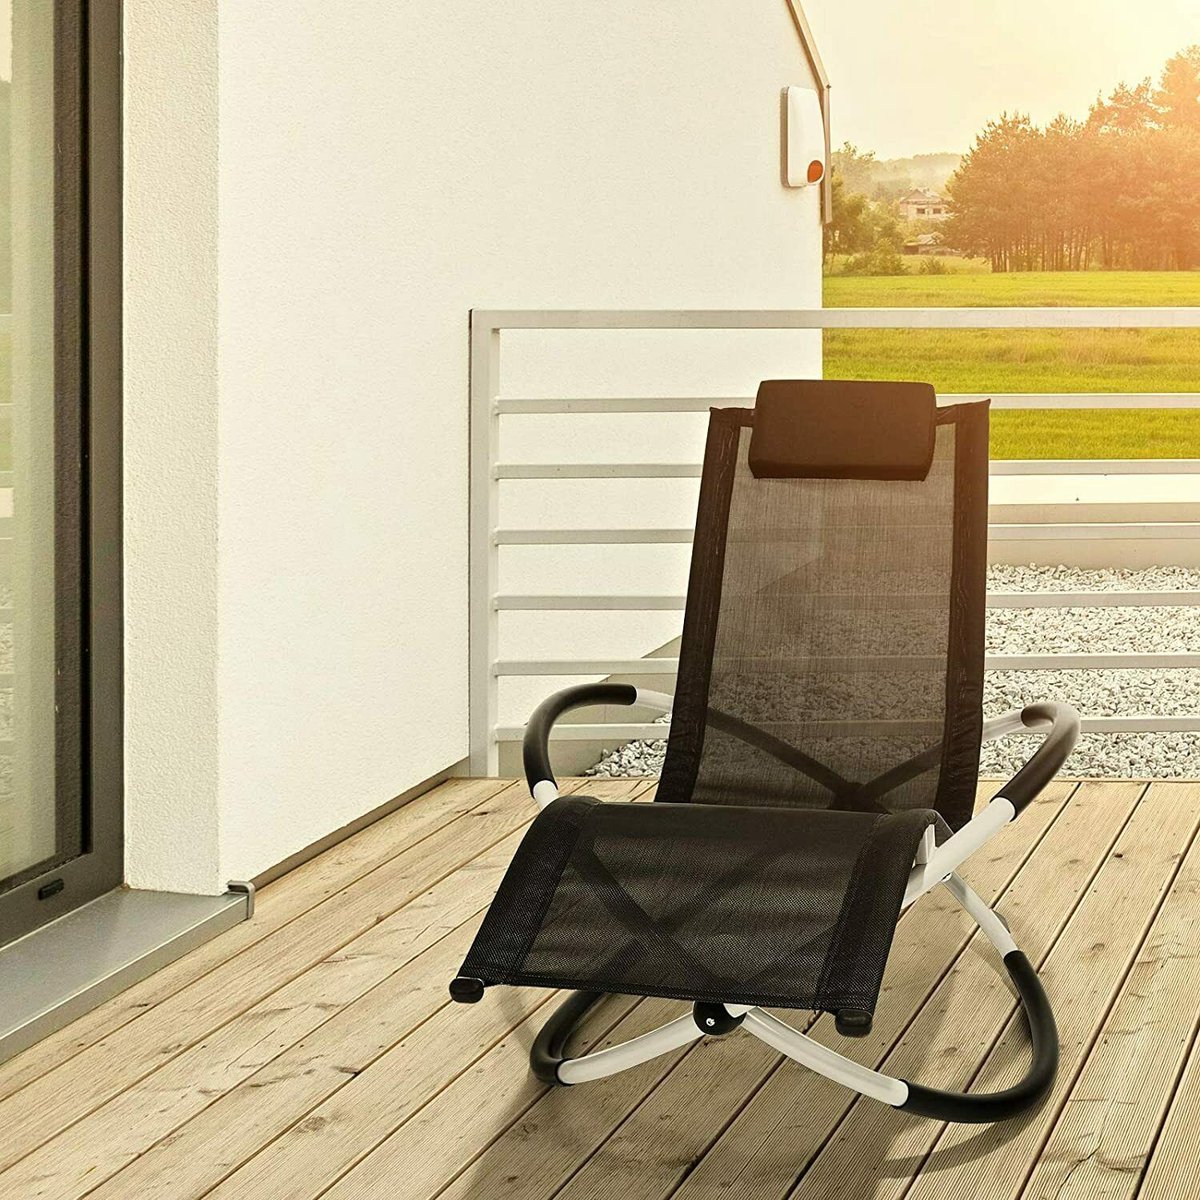 Ligstoel Schommelstoel Ligstoel Verstelbare Ergonomische Leisure Ligstoel Outdoor Lounge 180Kgs Belasting Stoel Voor Tuin Terrassen Zwart